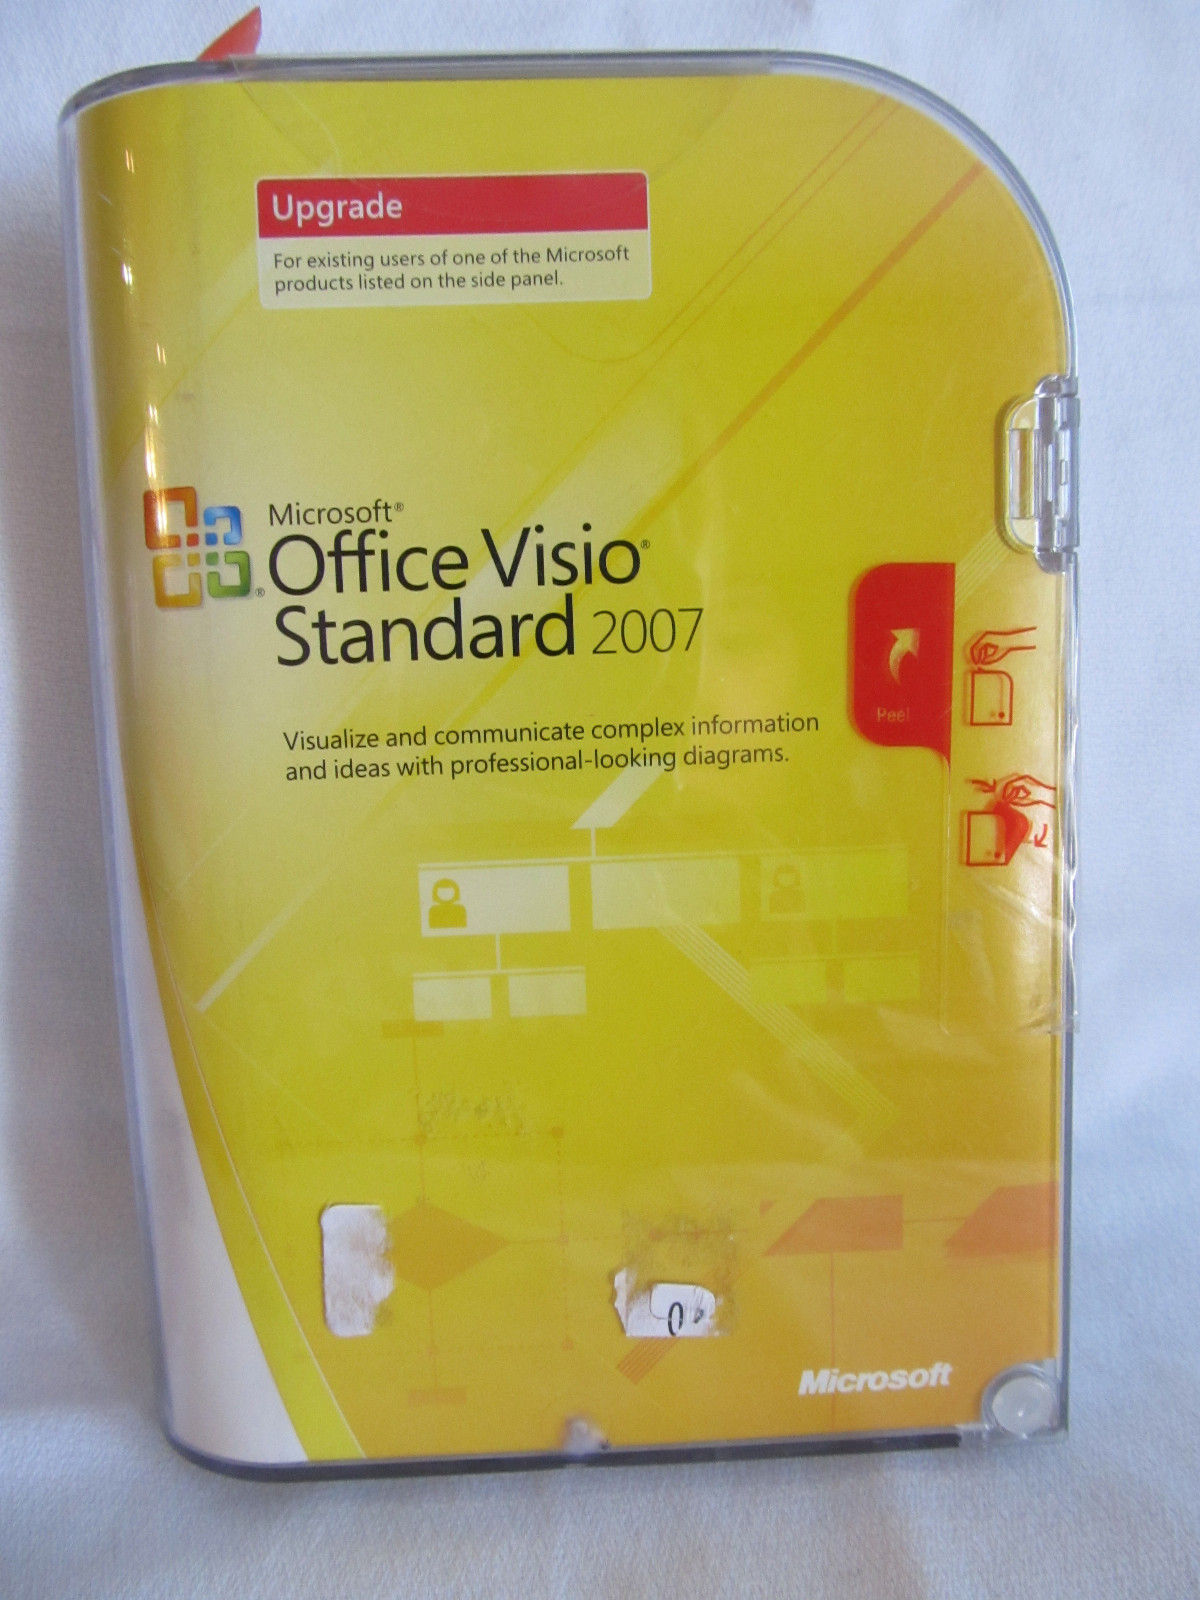 Microsoft MS Office Visio Standard 2007 versión de actualización de software